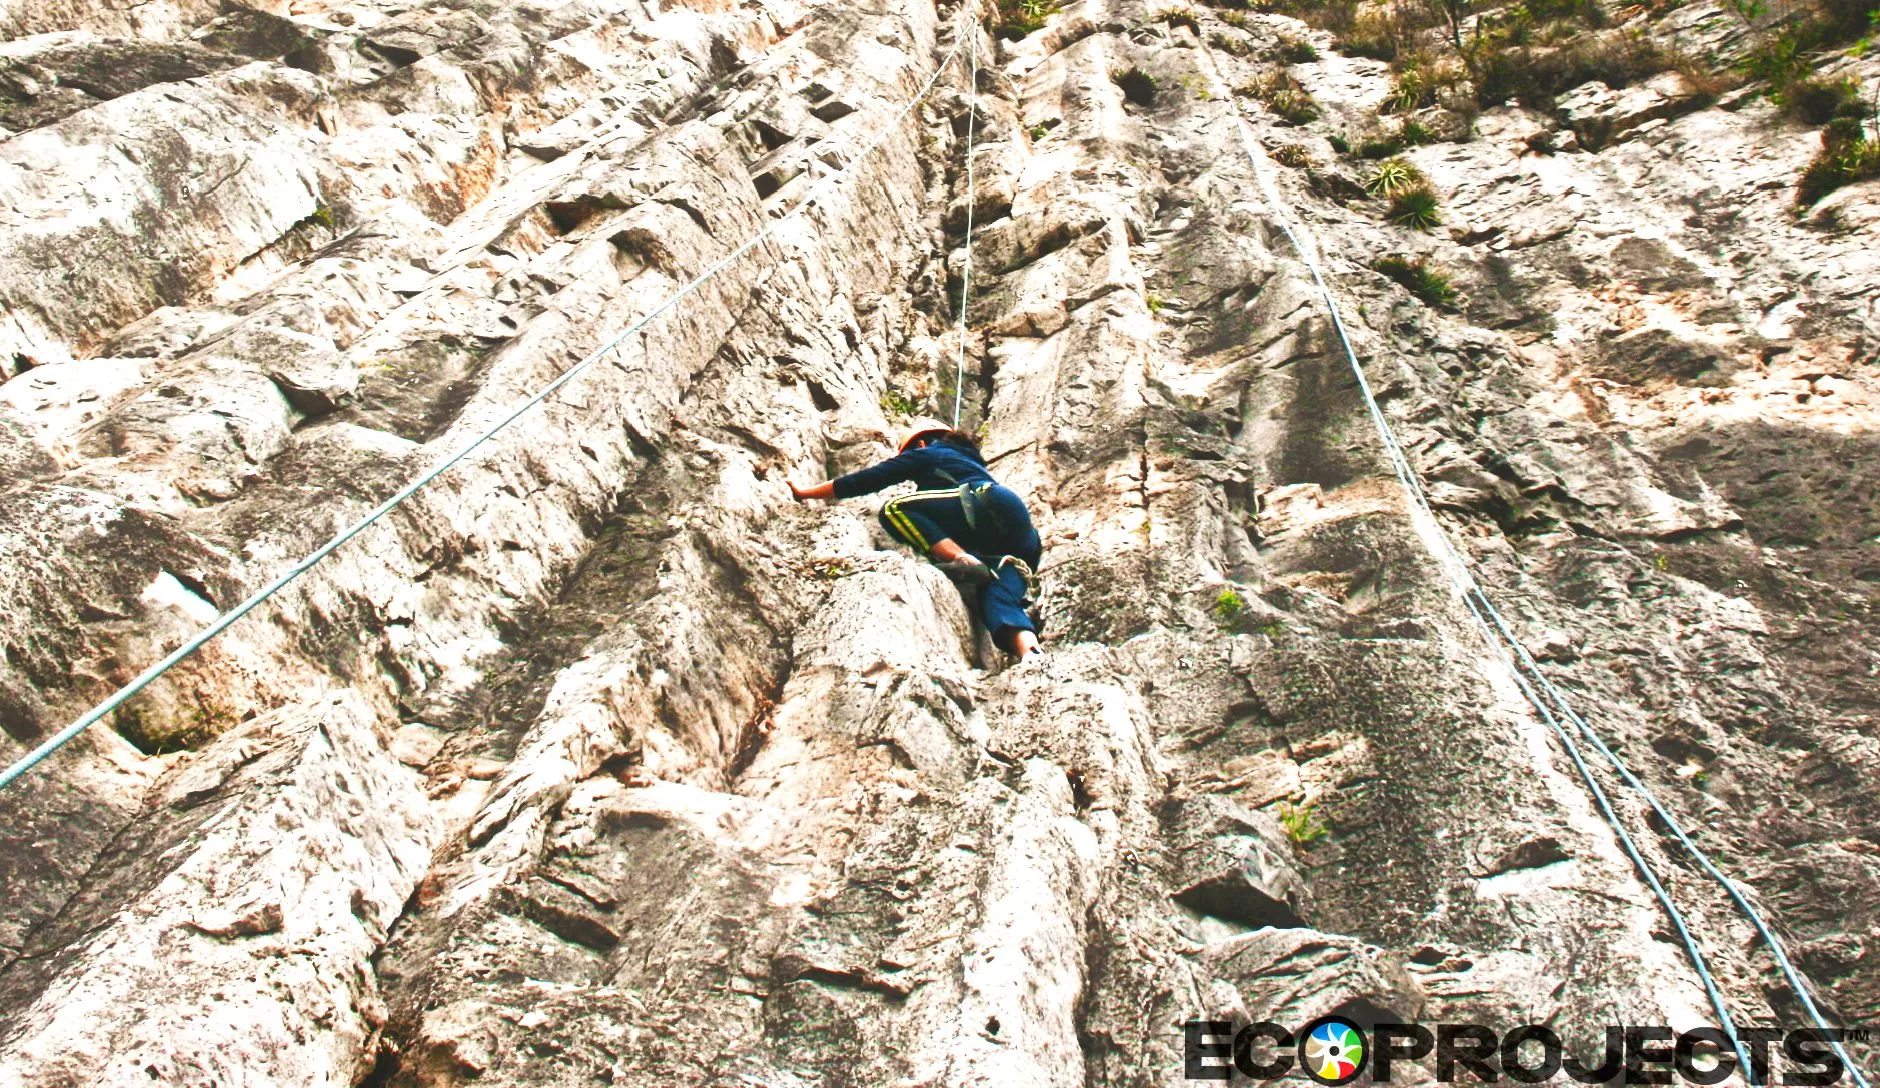 Ecoproparks. Persona utilizando rapel para escalar montaña rocosa.